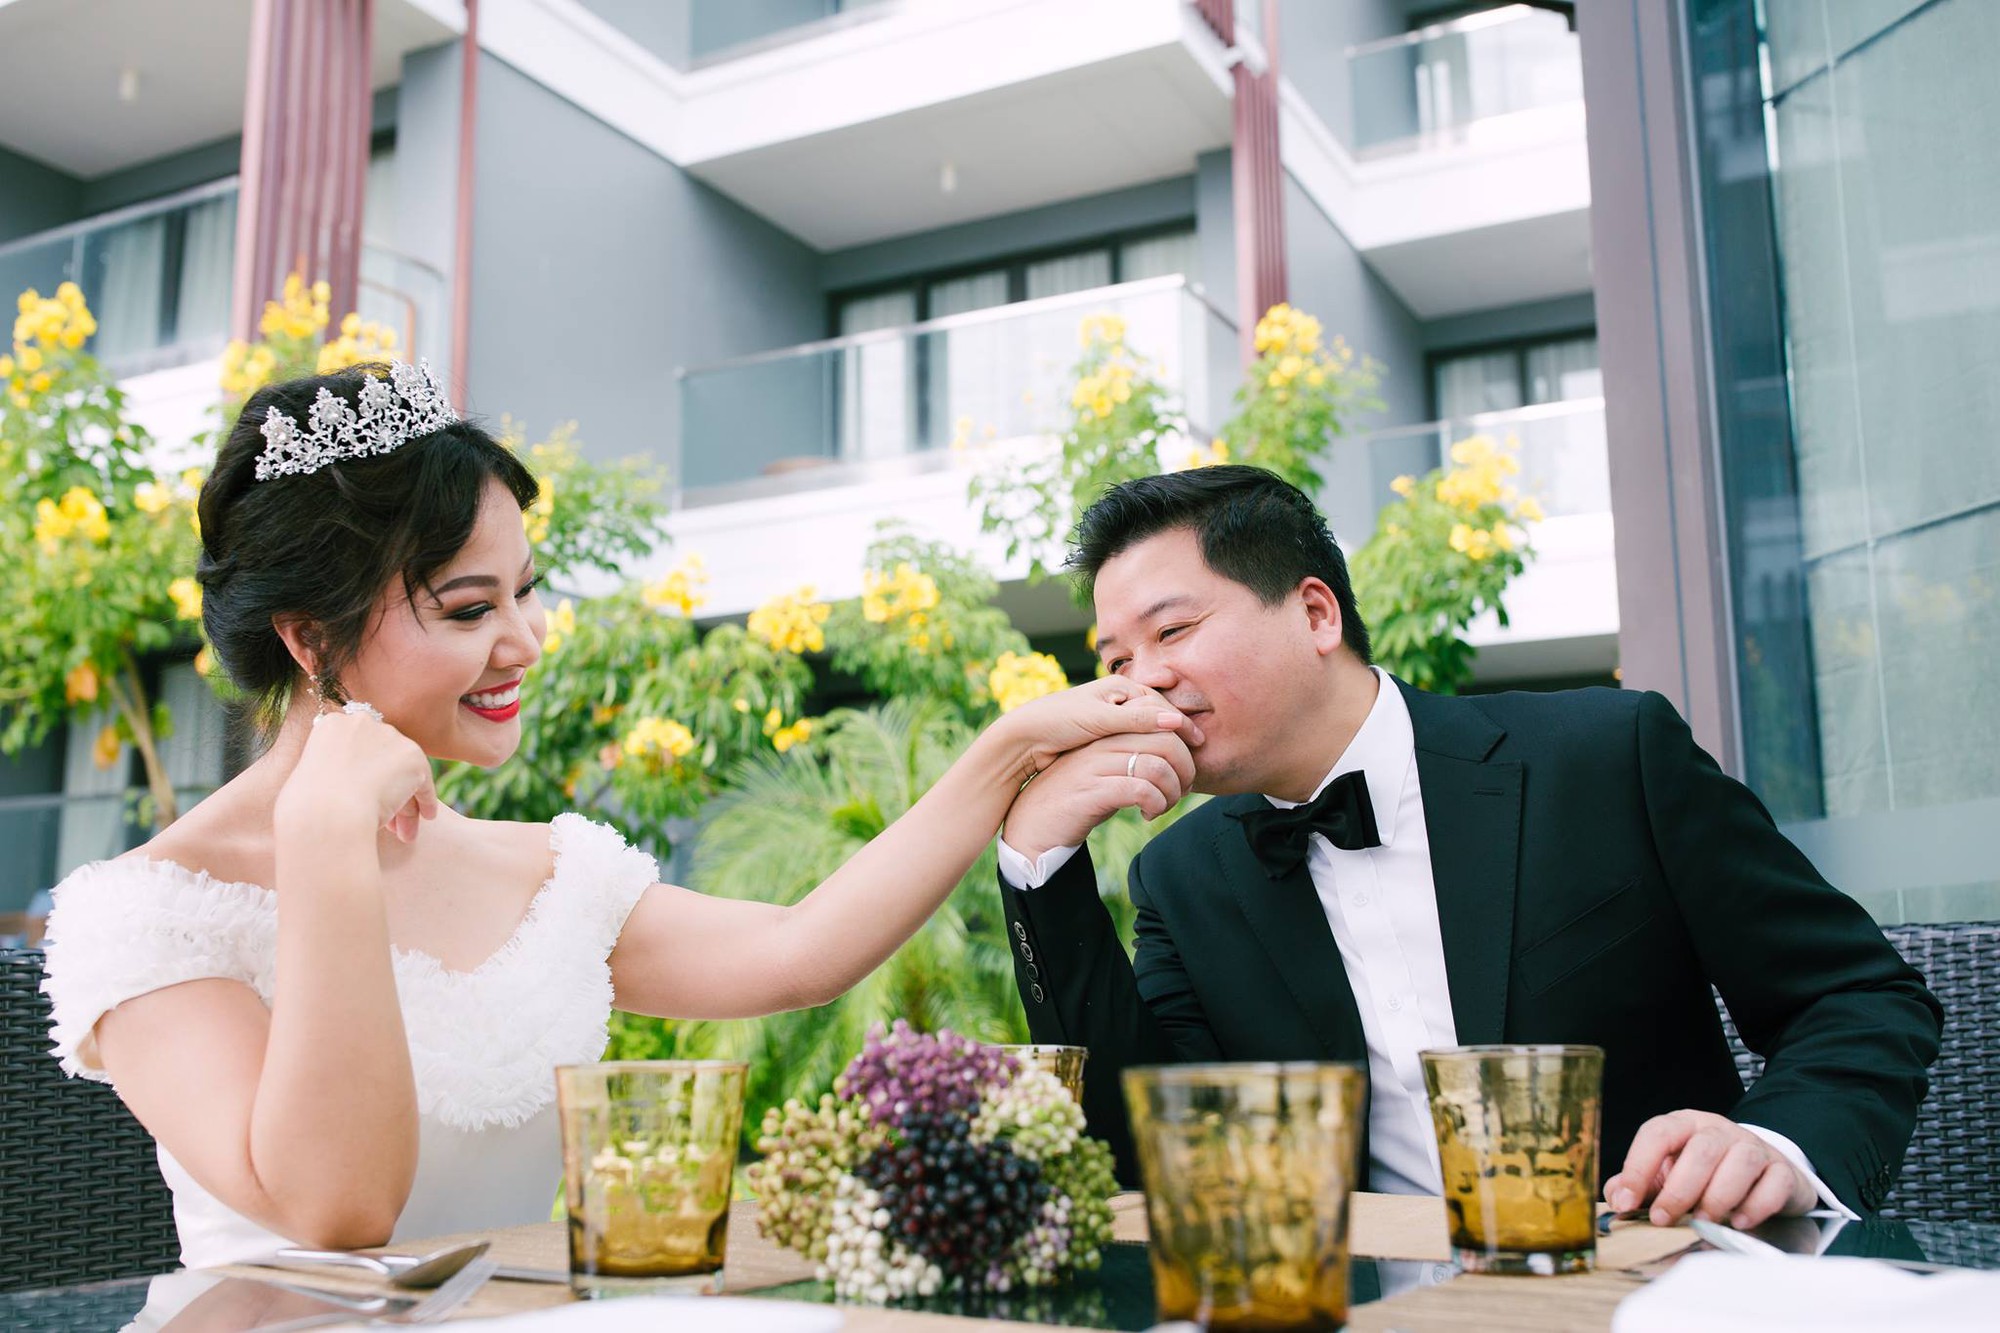 Hôn nhân ngọt ngào của NSƯT Đăng Dương với bà xã xinh đẹp - Ảnh 3.